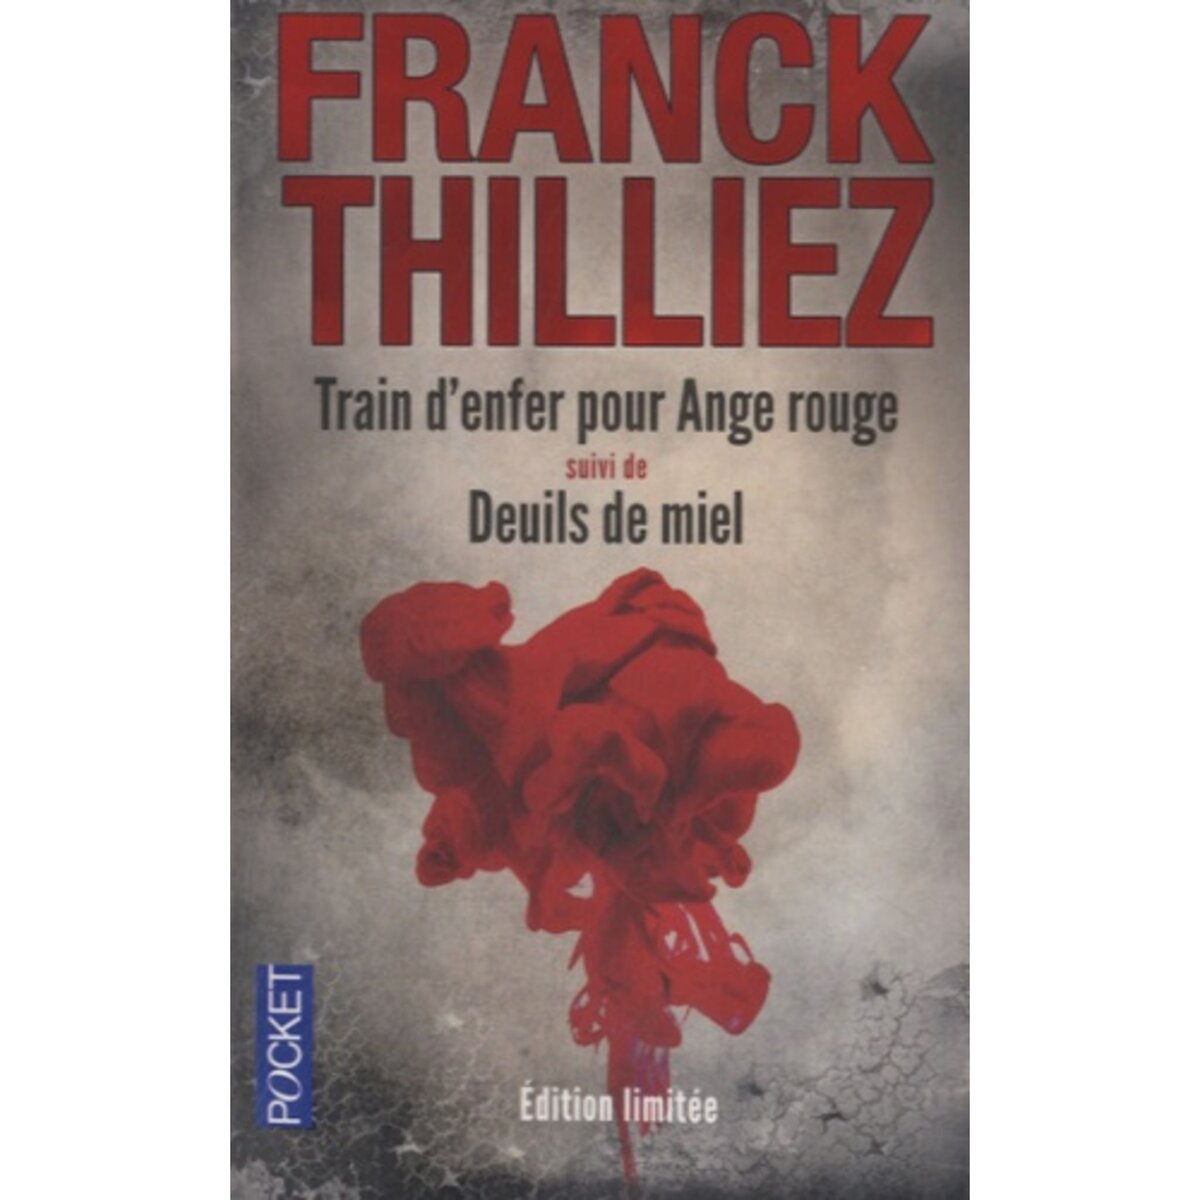  TRAIN D'ENFER POUR ANGE ROUGE SUIVI DE DEUILS DE MIEL, Thilliez Franck